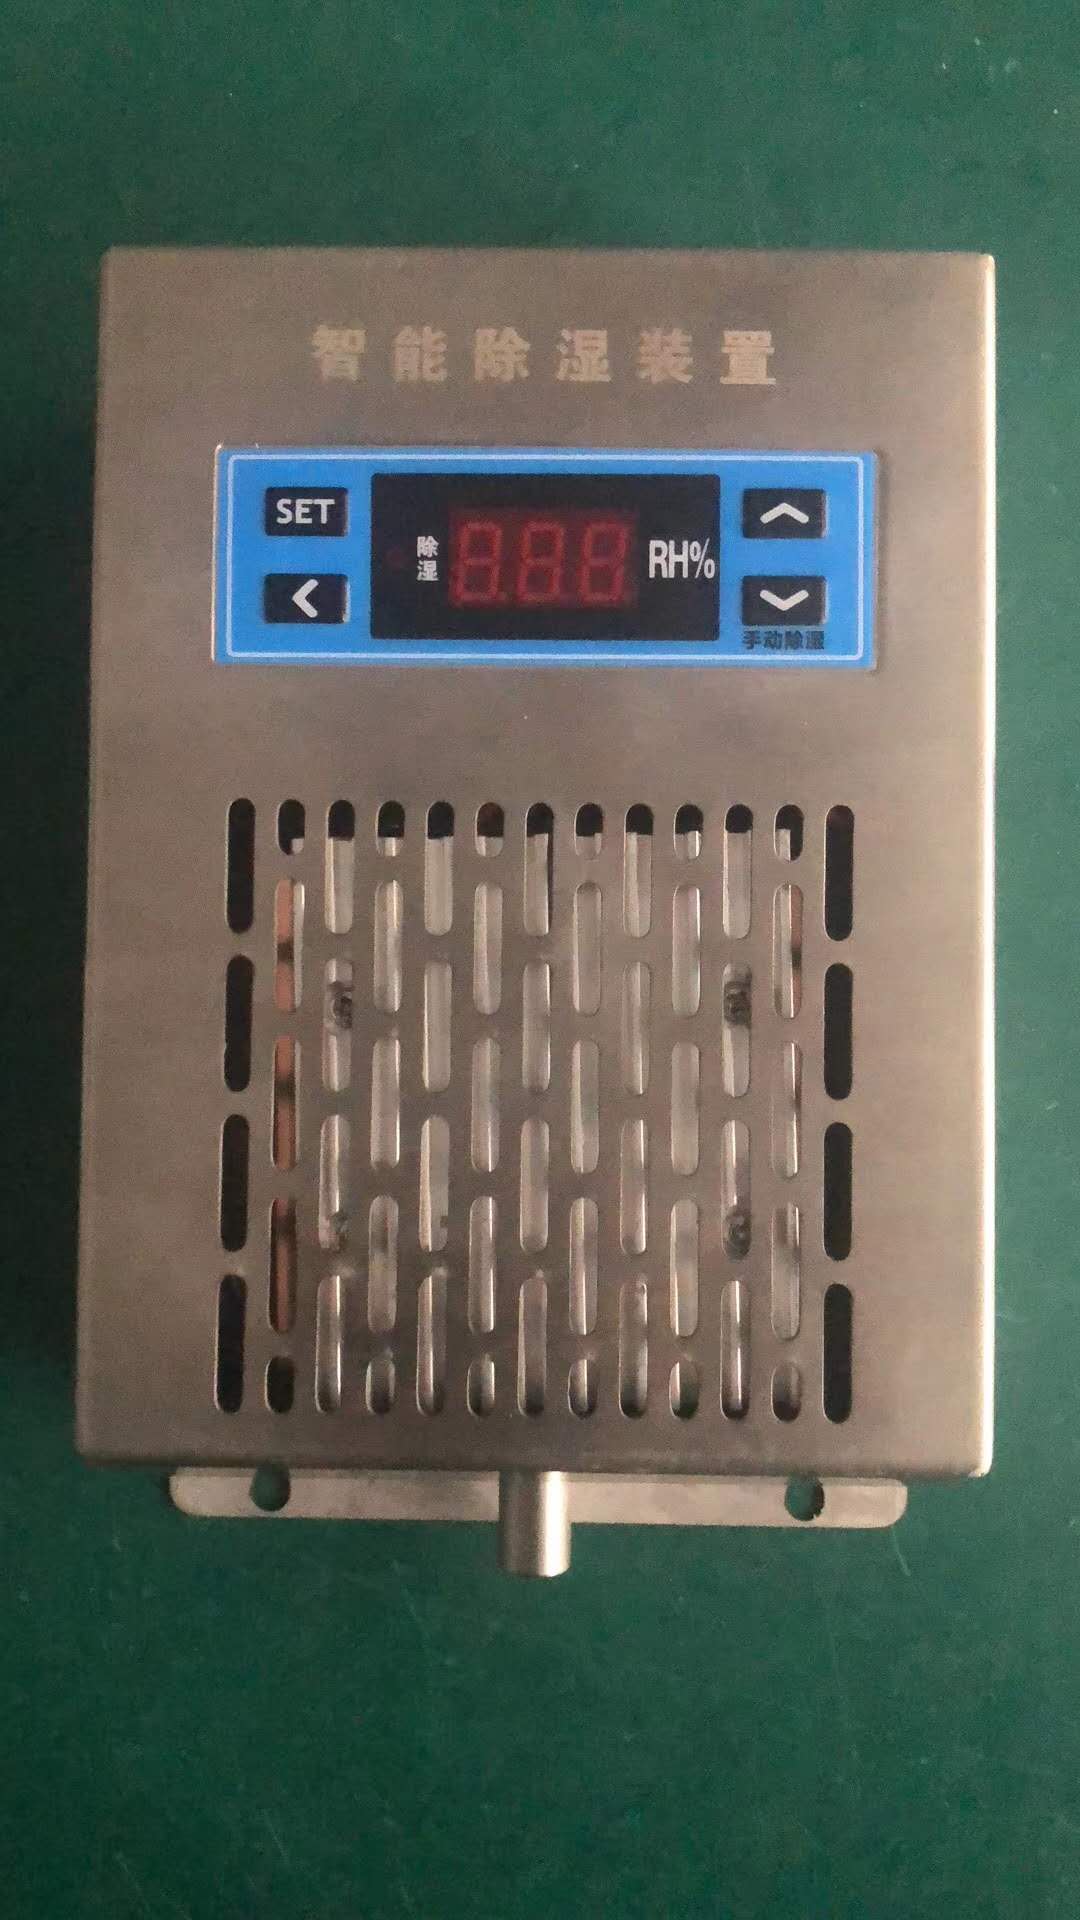 温湿度控制器NHR-1303F-14